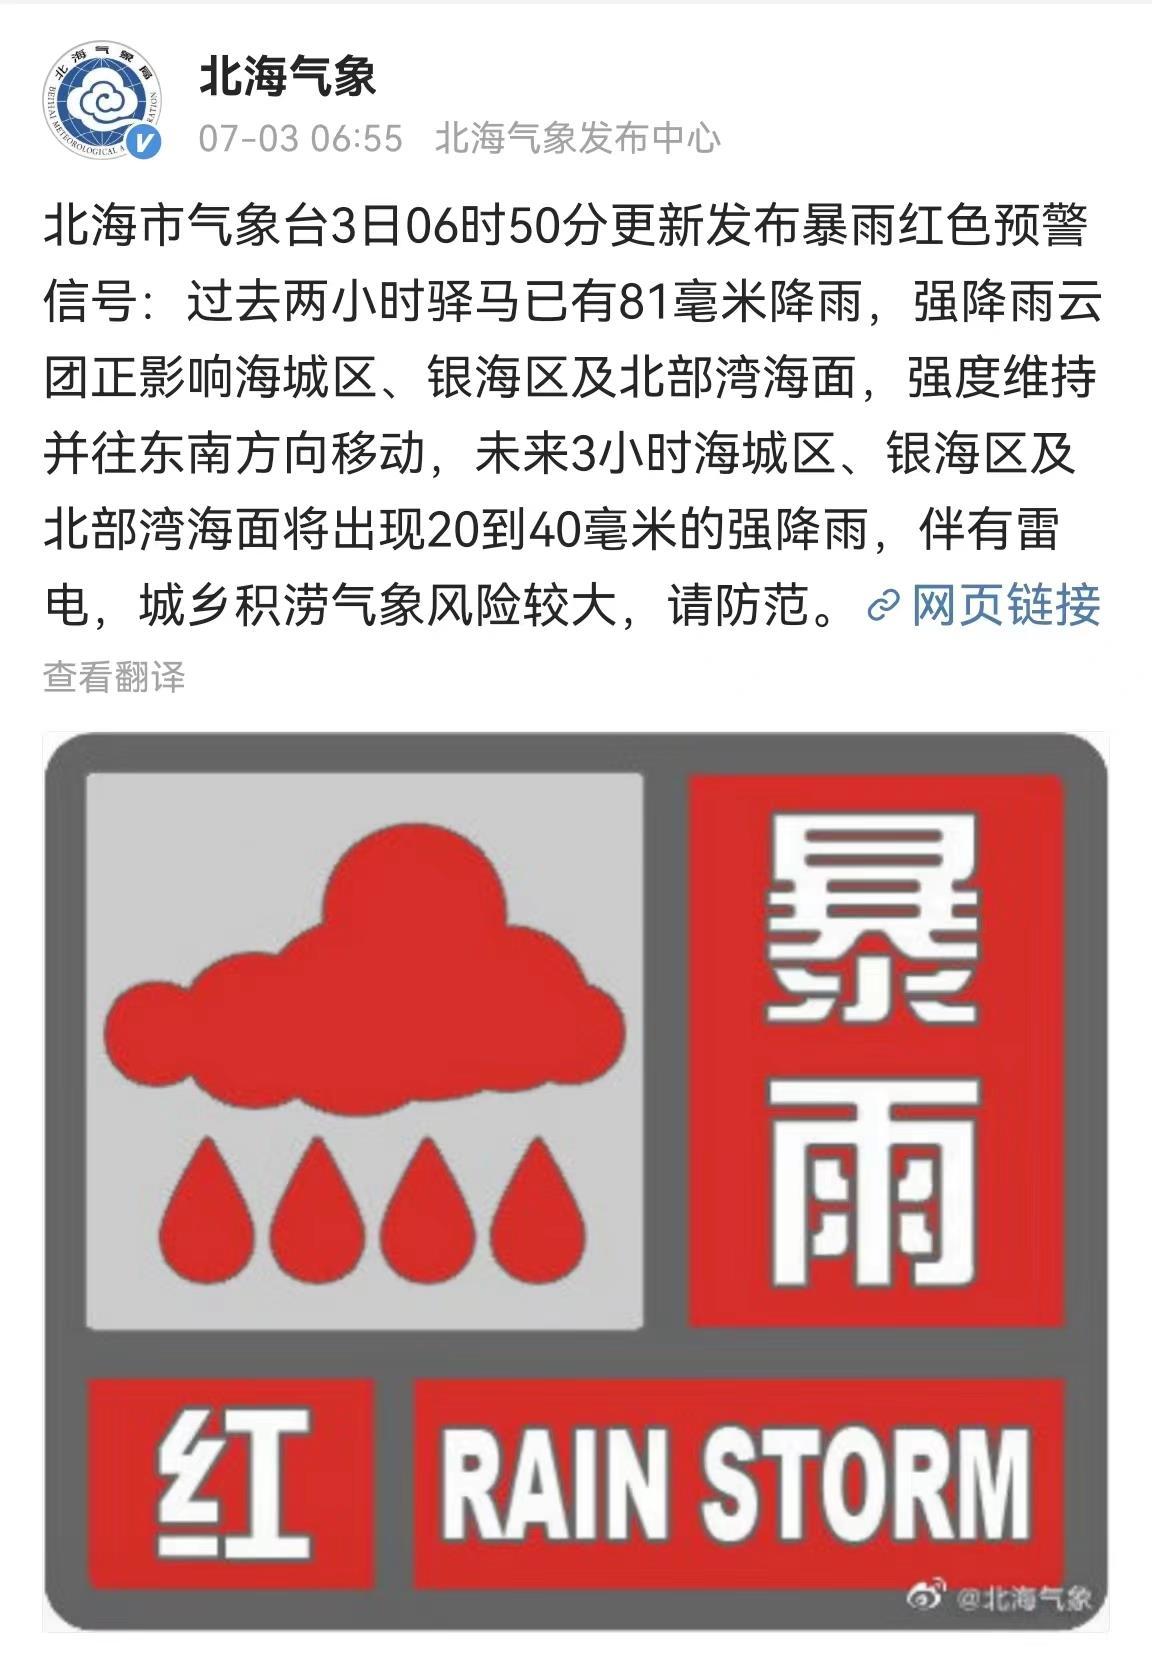 广西北海遭暴雨内涝 消防解救疏散180余名群众_北京时间